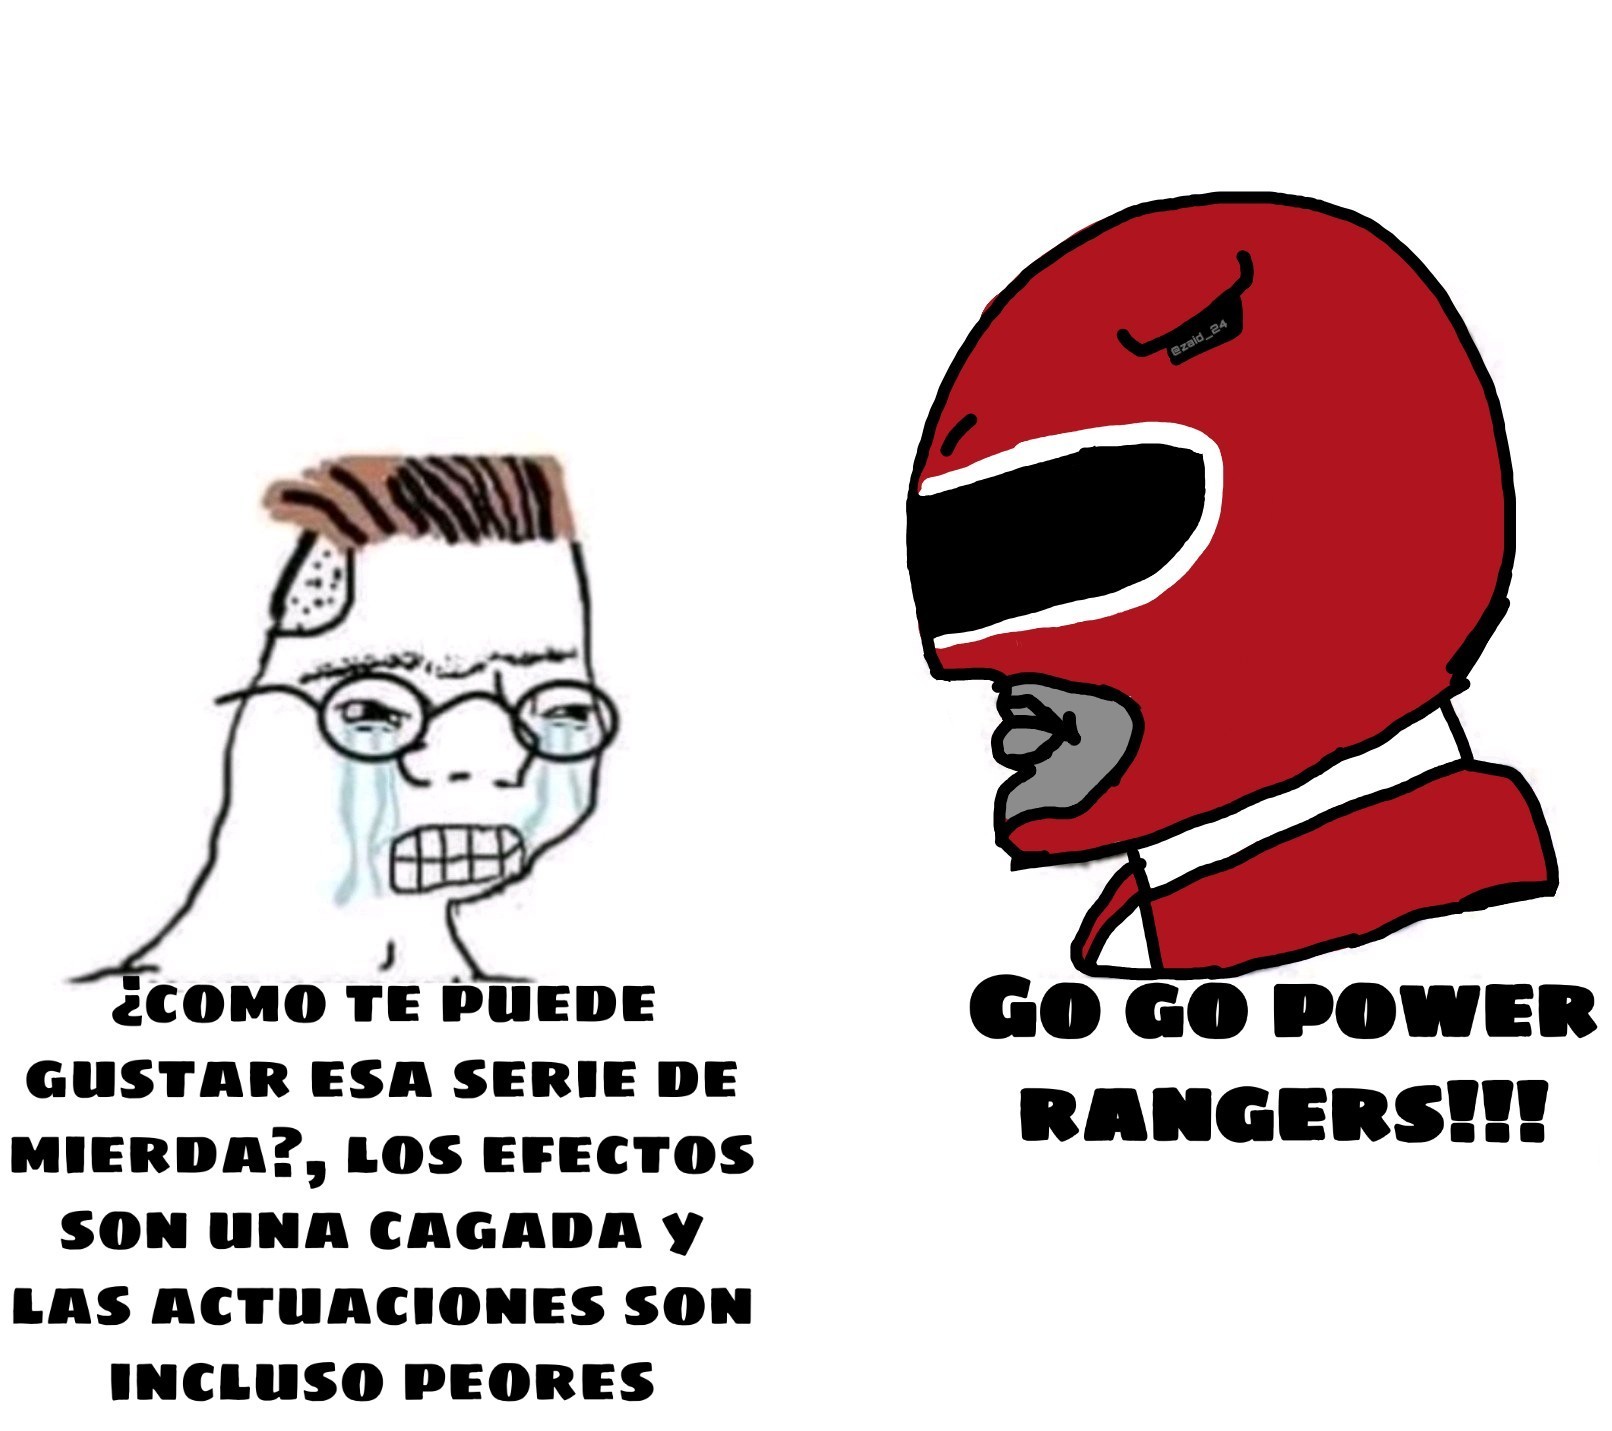 Go go power rangers - meme